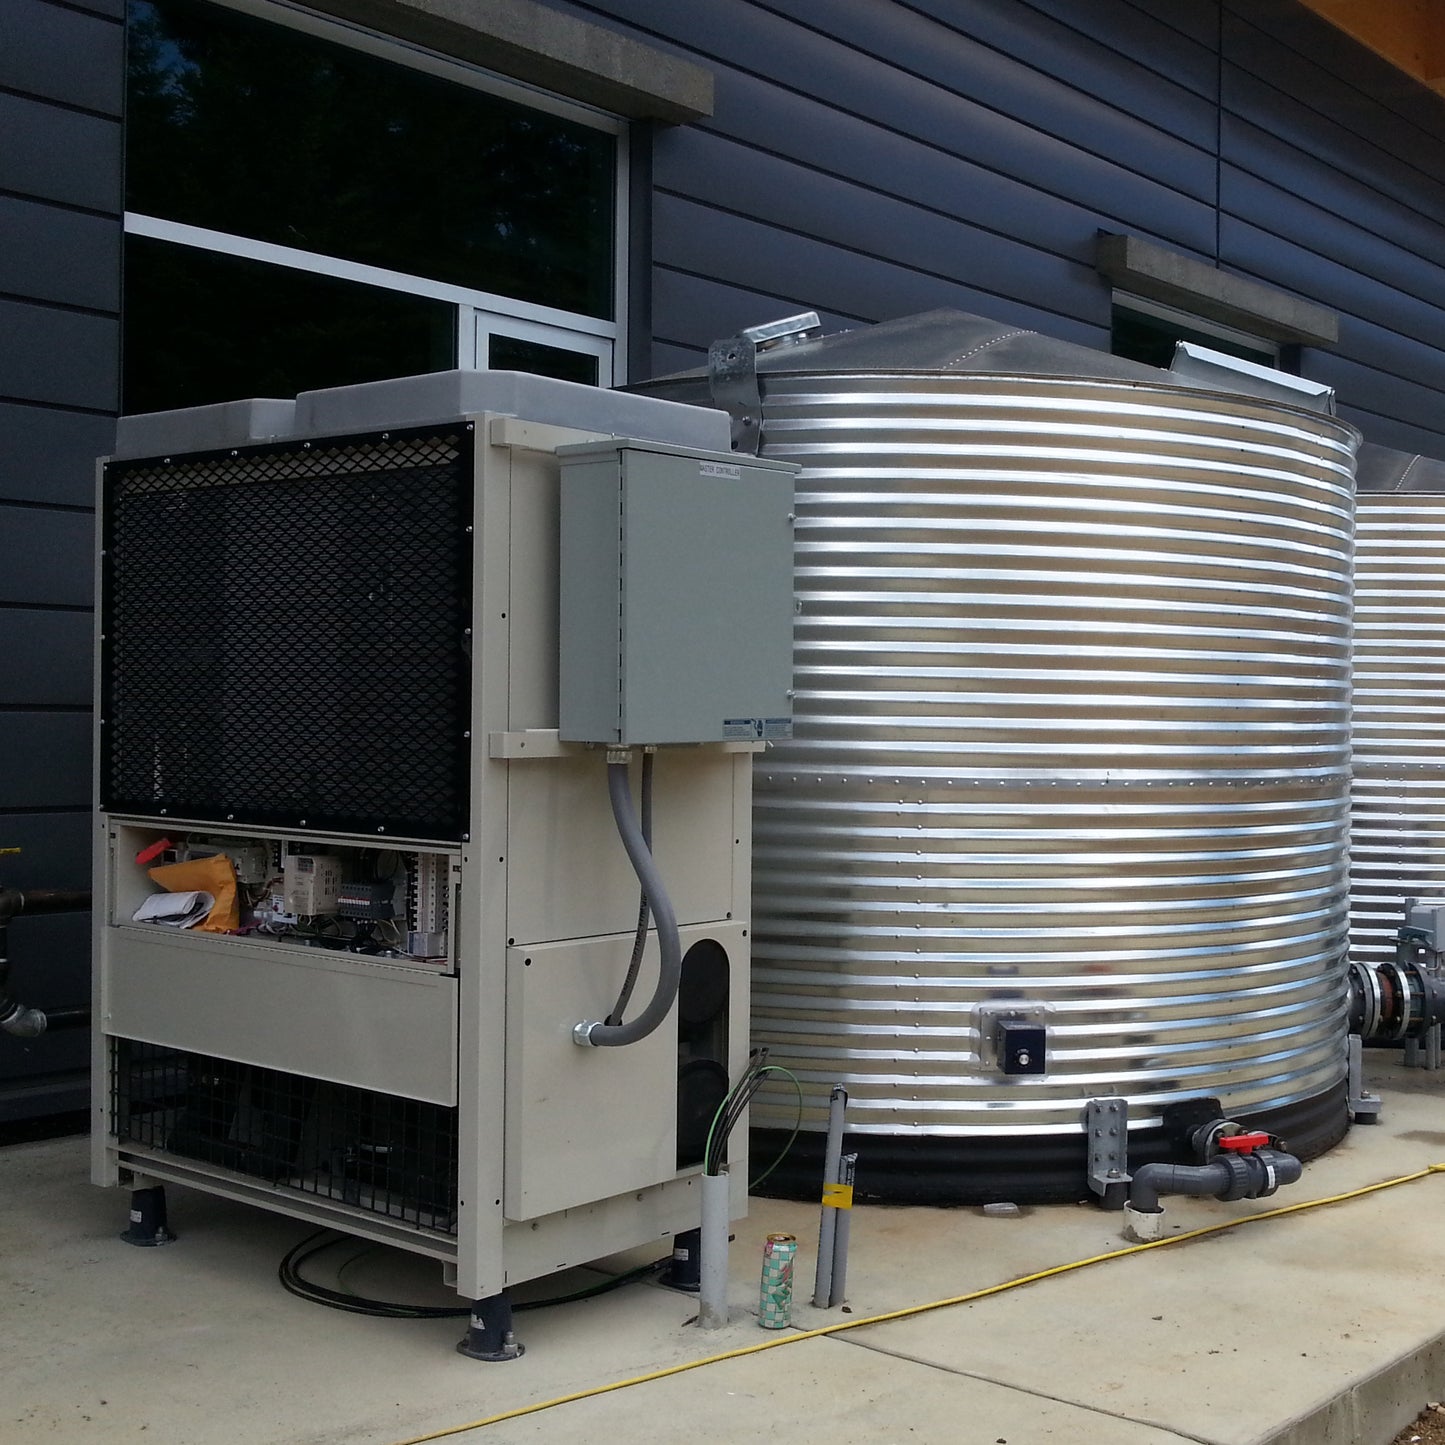 Galvanized Steel Water Storage Tanks